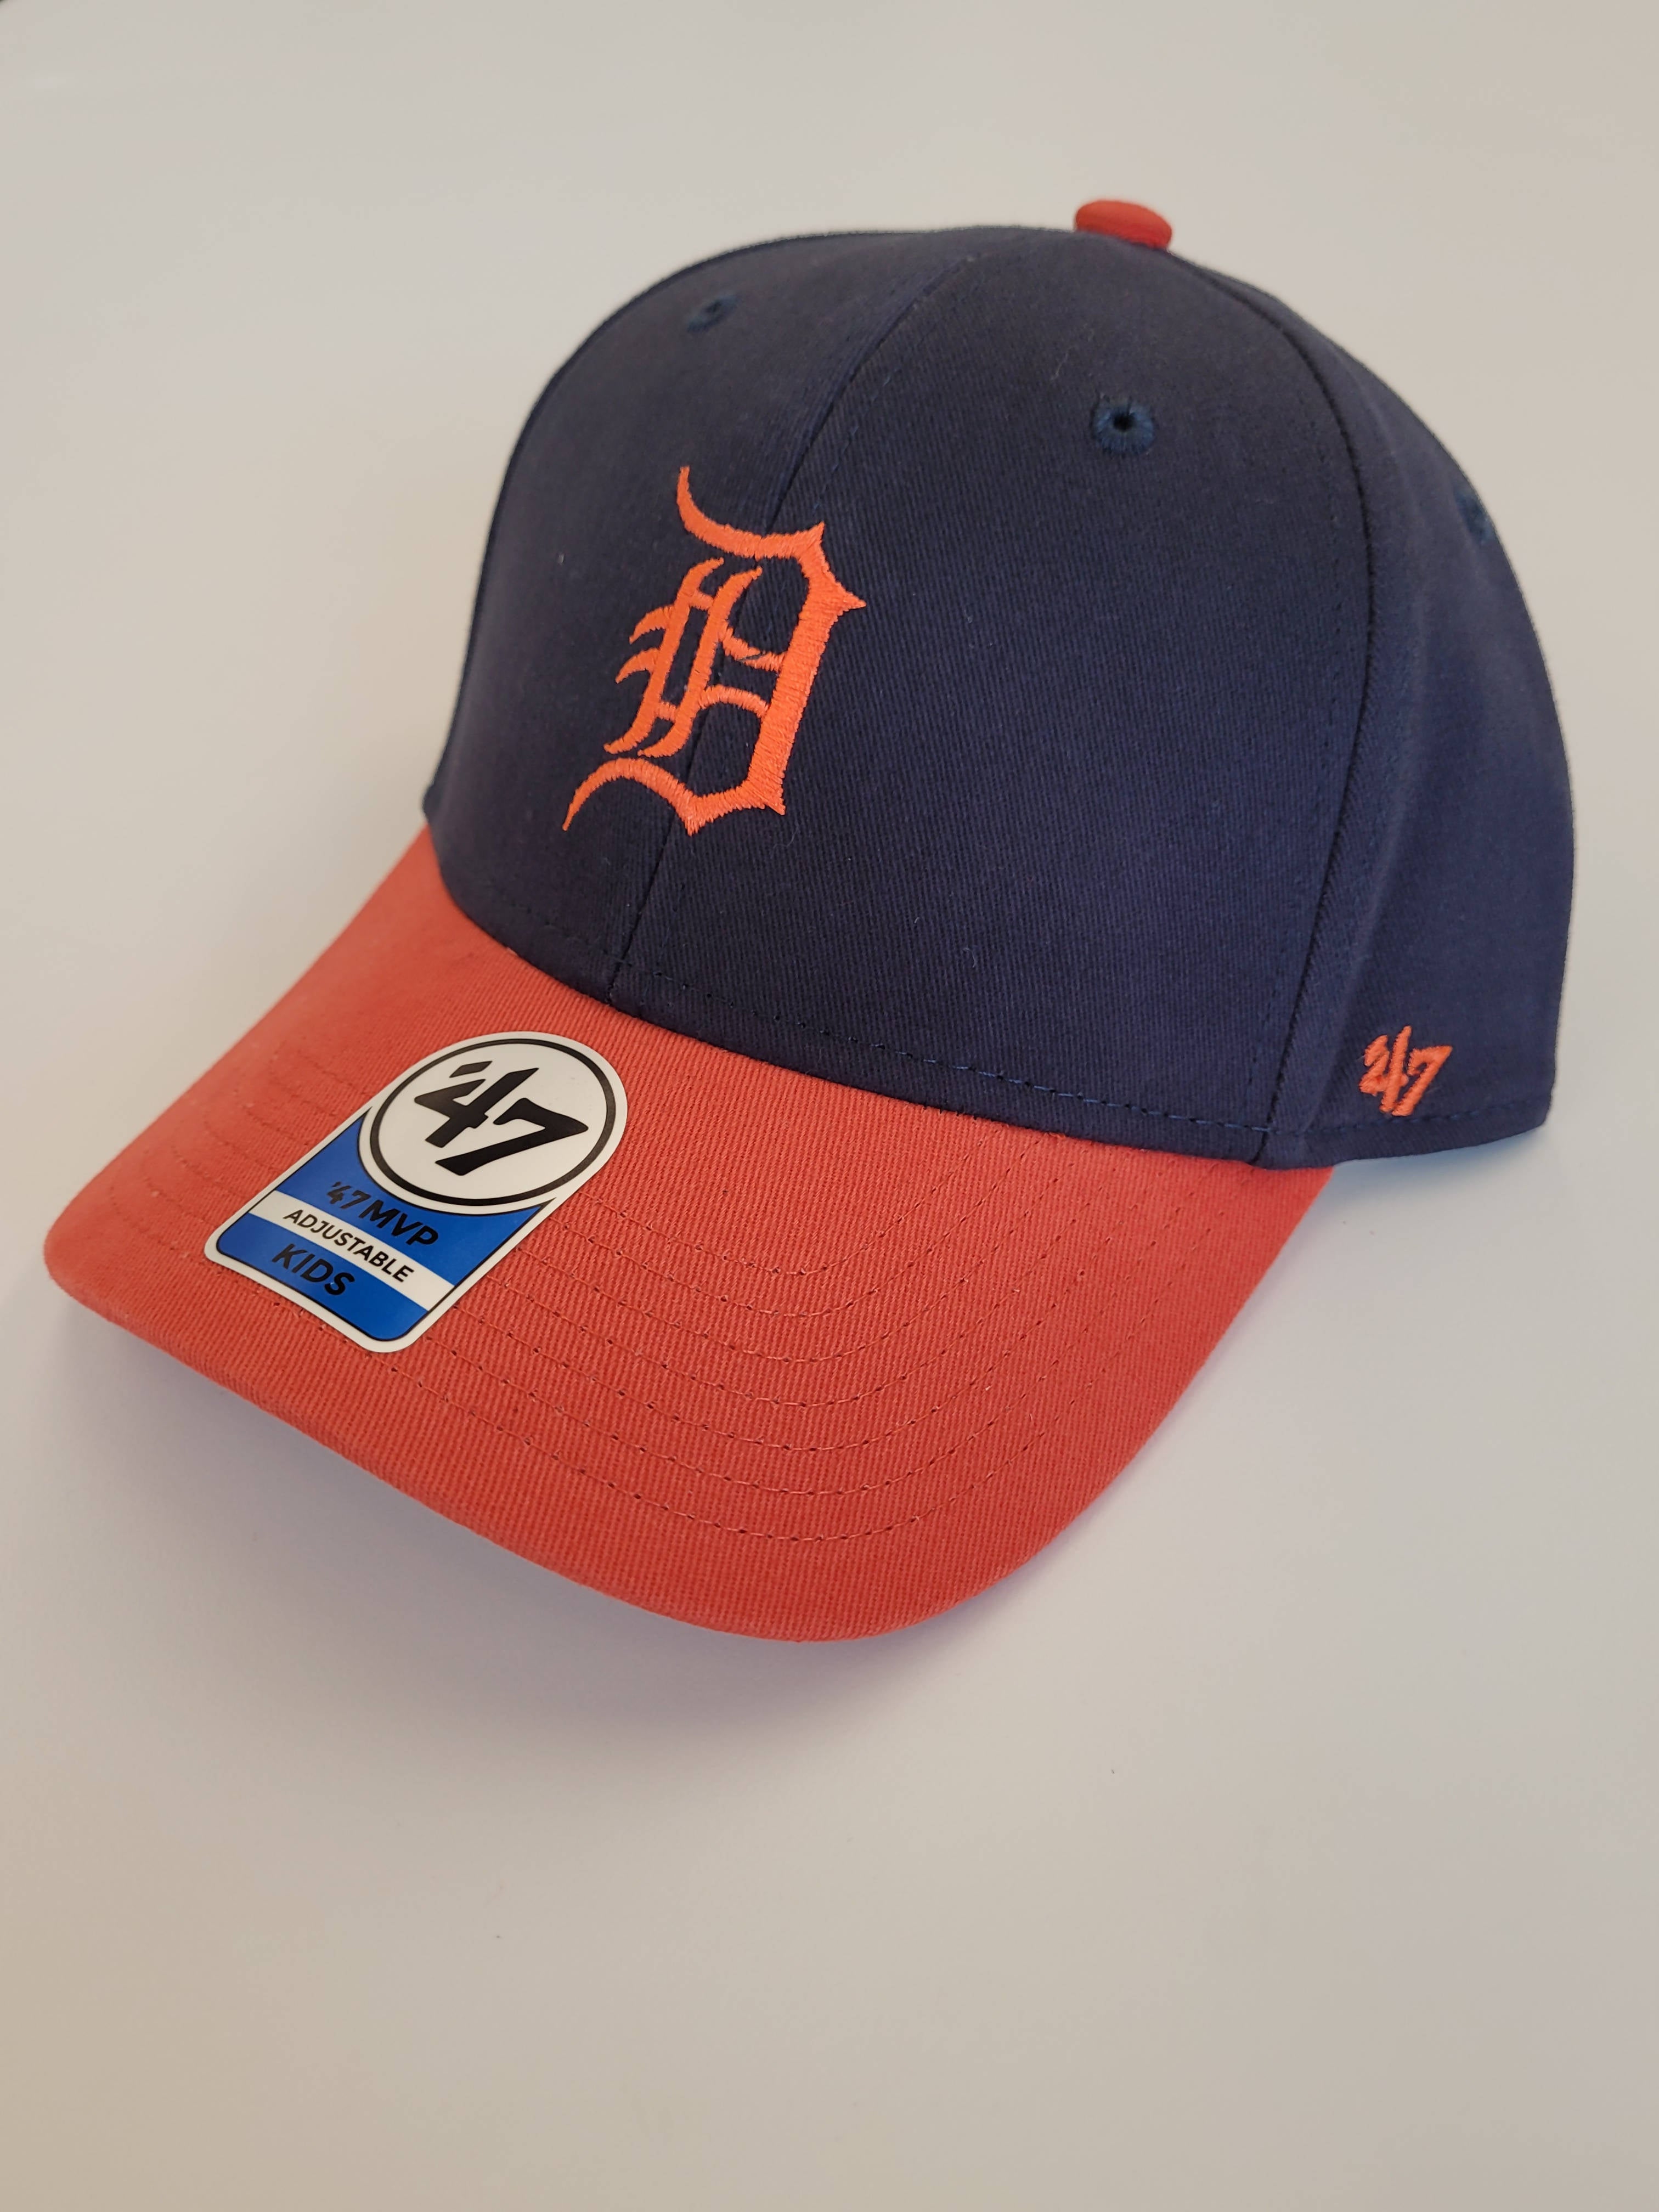 Men's Detroit Tigers '47 Navy Vintage Clean Up Adjustable Hat